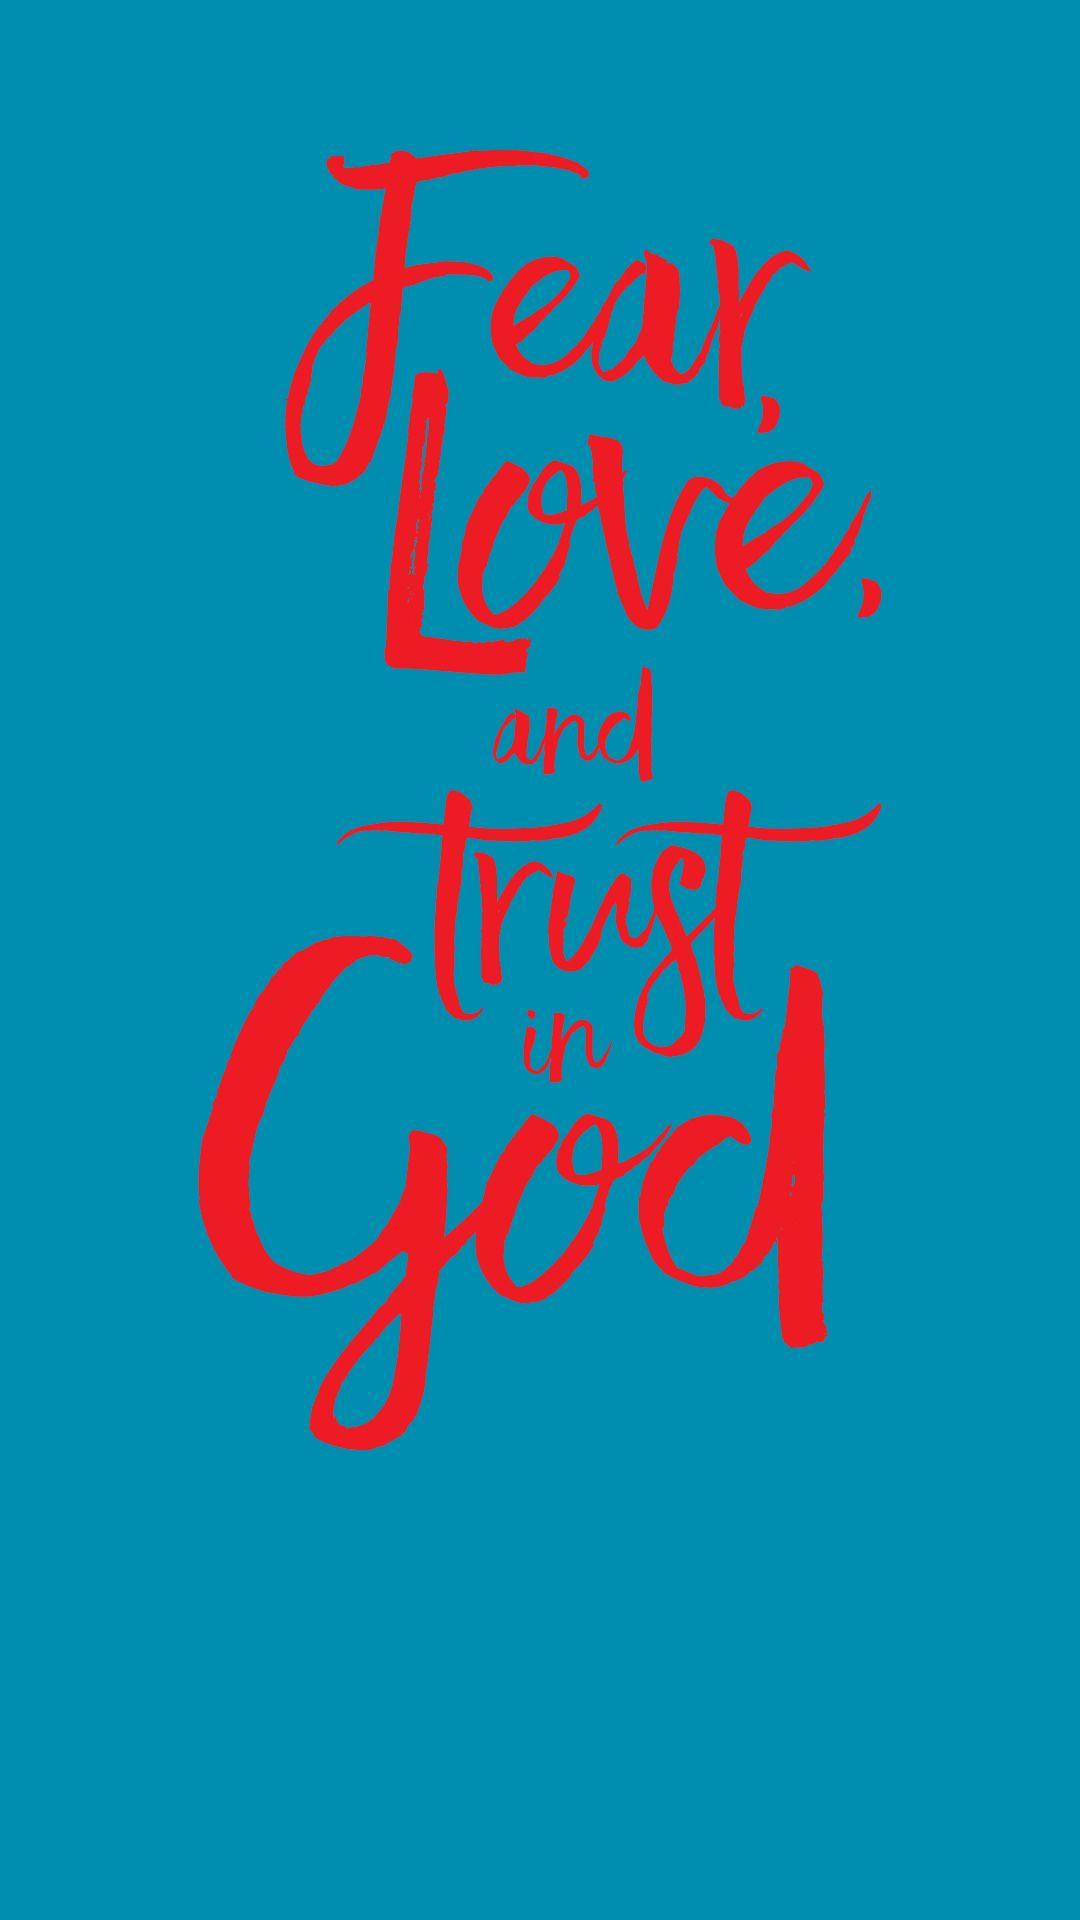 Printable Fear of God Logo - Free Printable Verses | Christian Art | Faith, Trust god, Bible